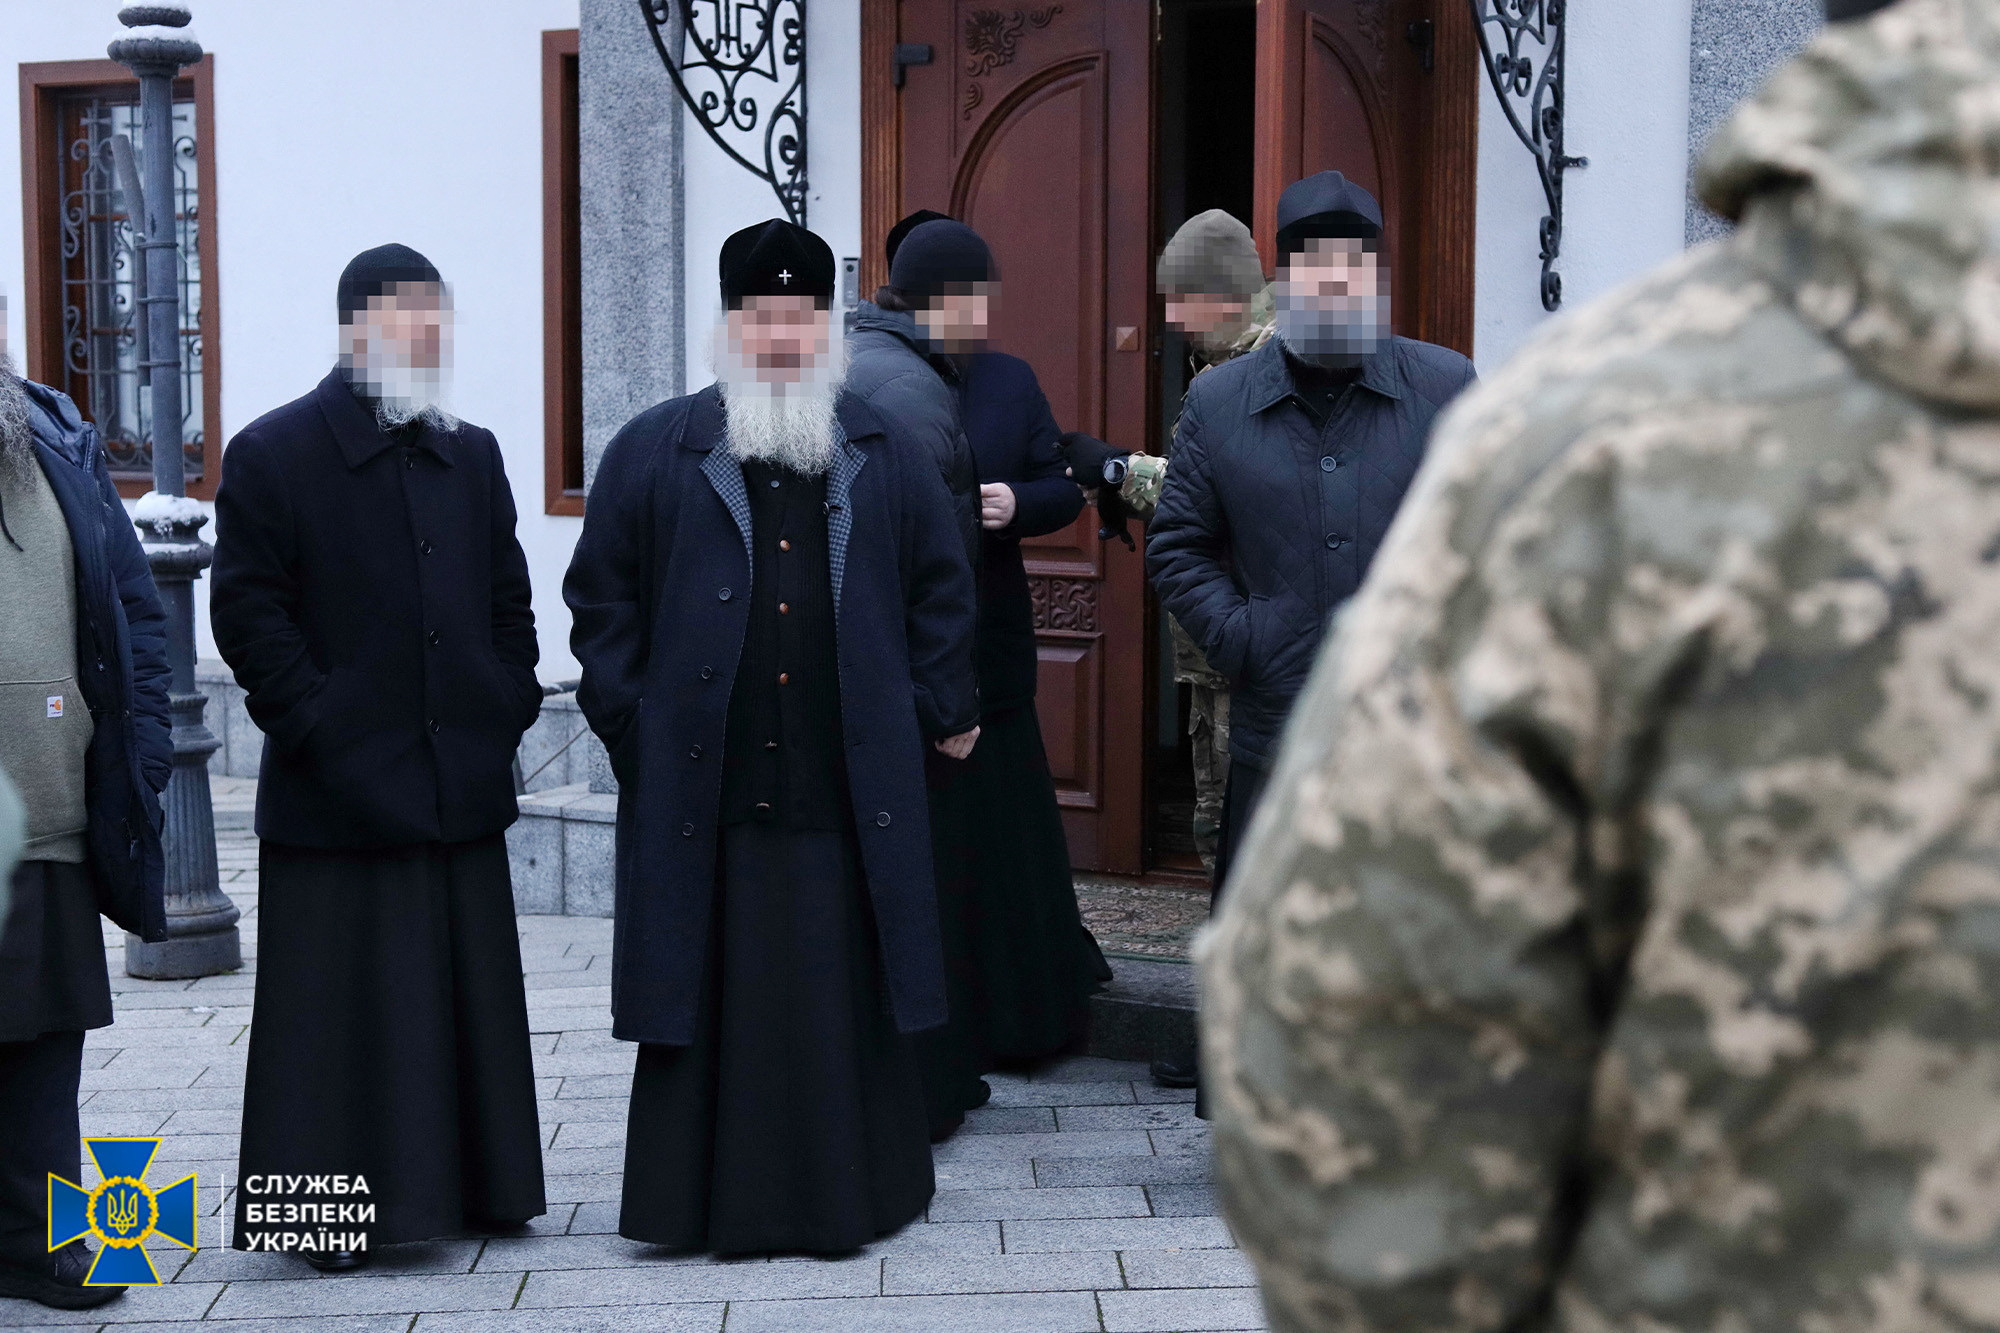 Ουκρανία: Οι υπηρεσίες ασφαλείας πραγματοποίησαν έρευνες σε μεγάλο μοναστήρι του Κιέβου